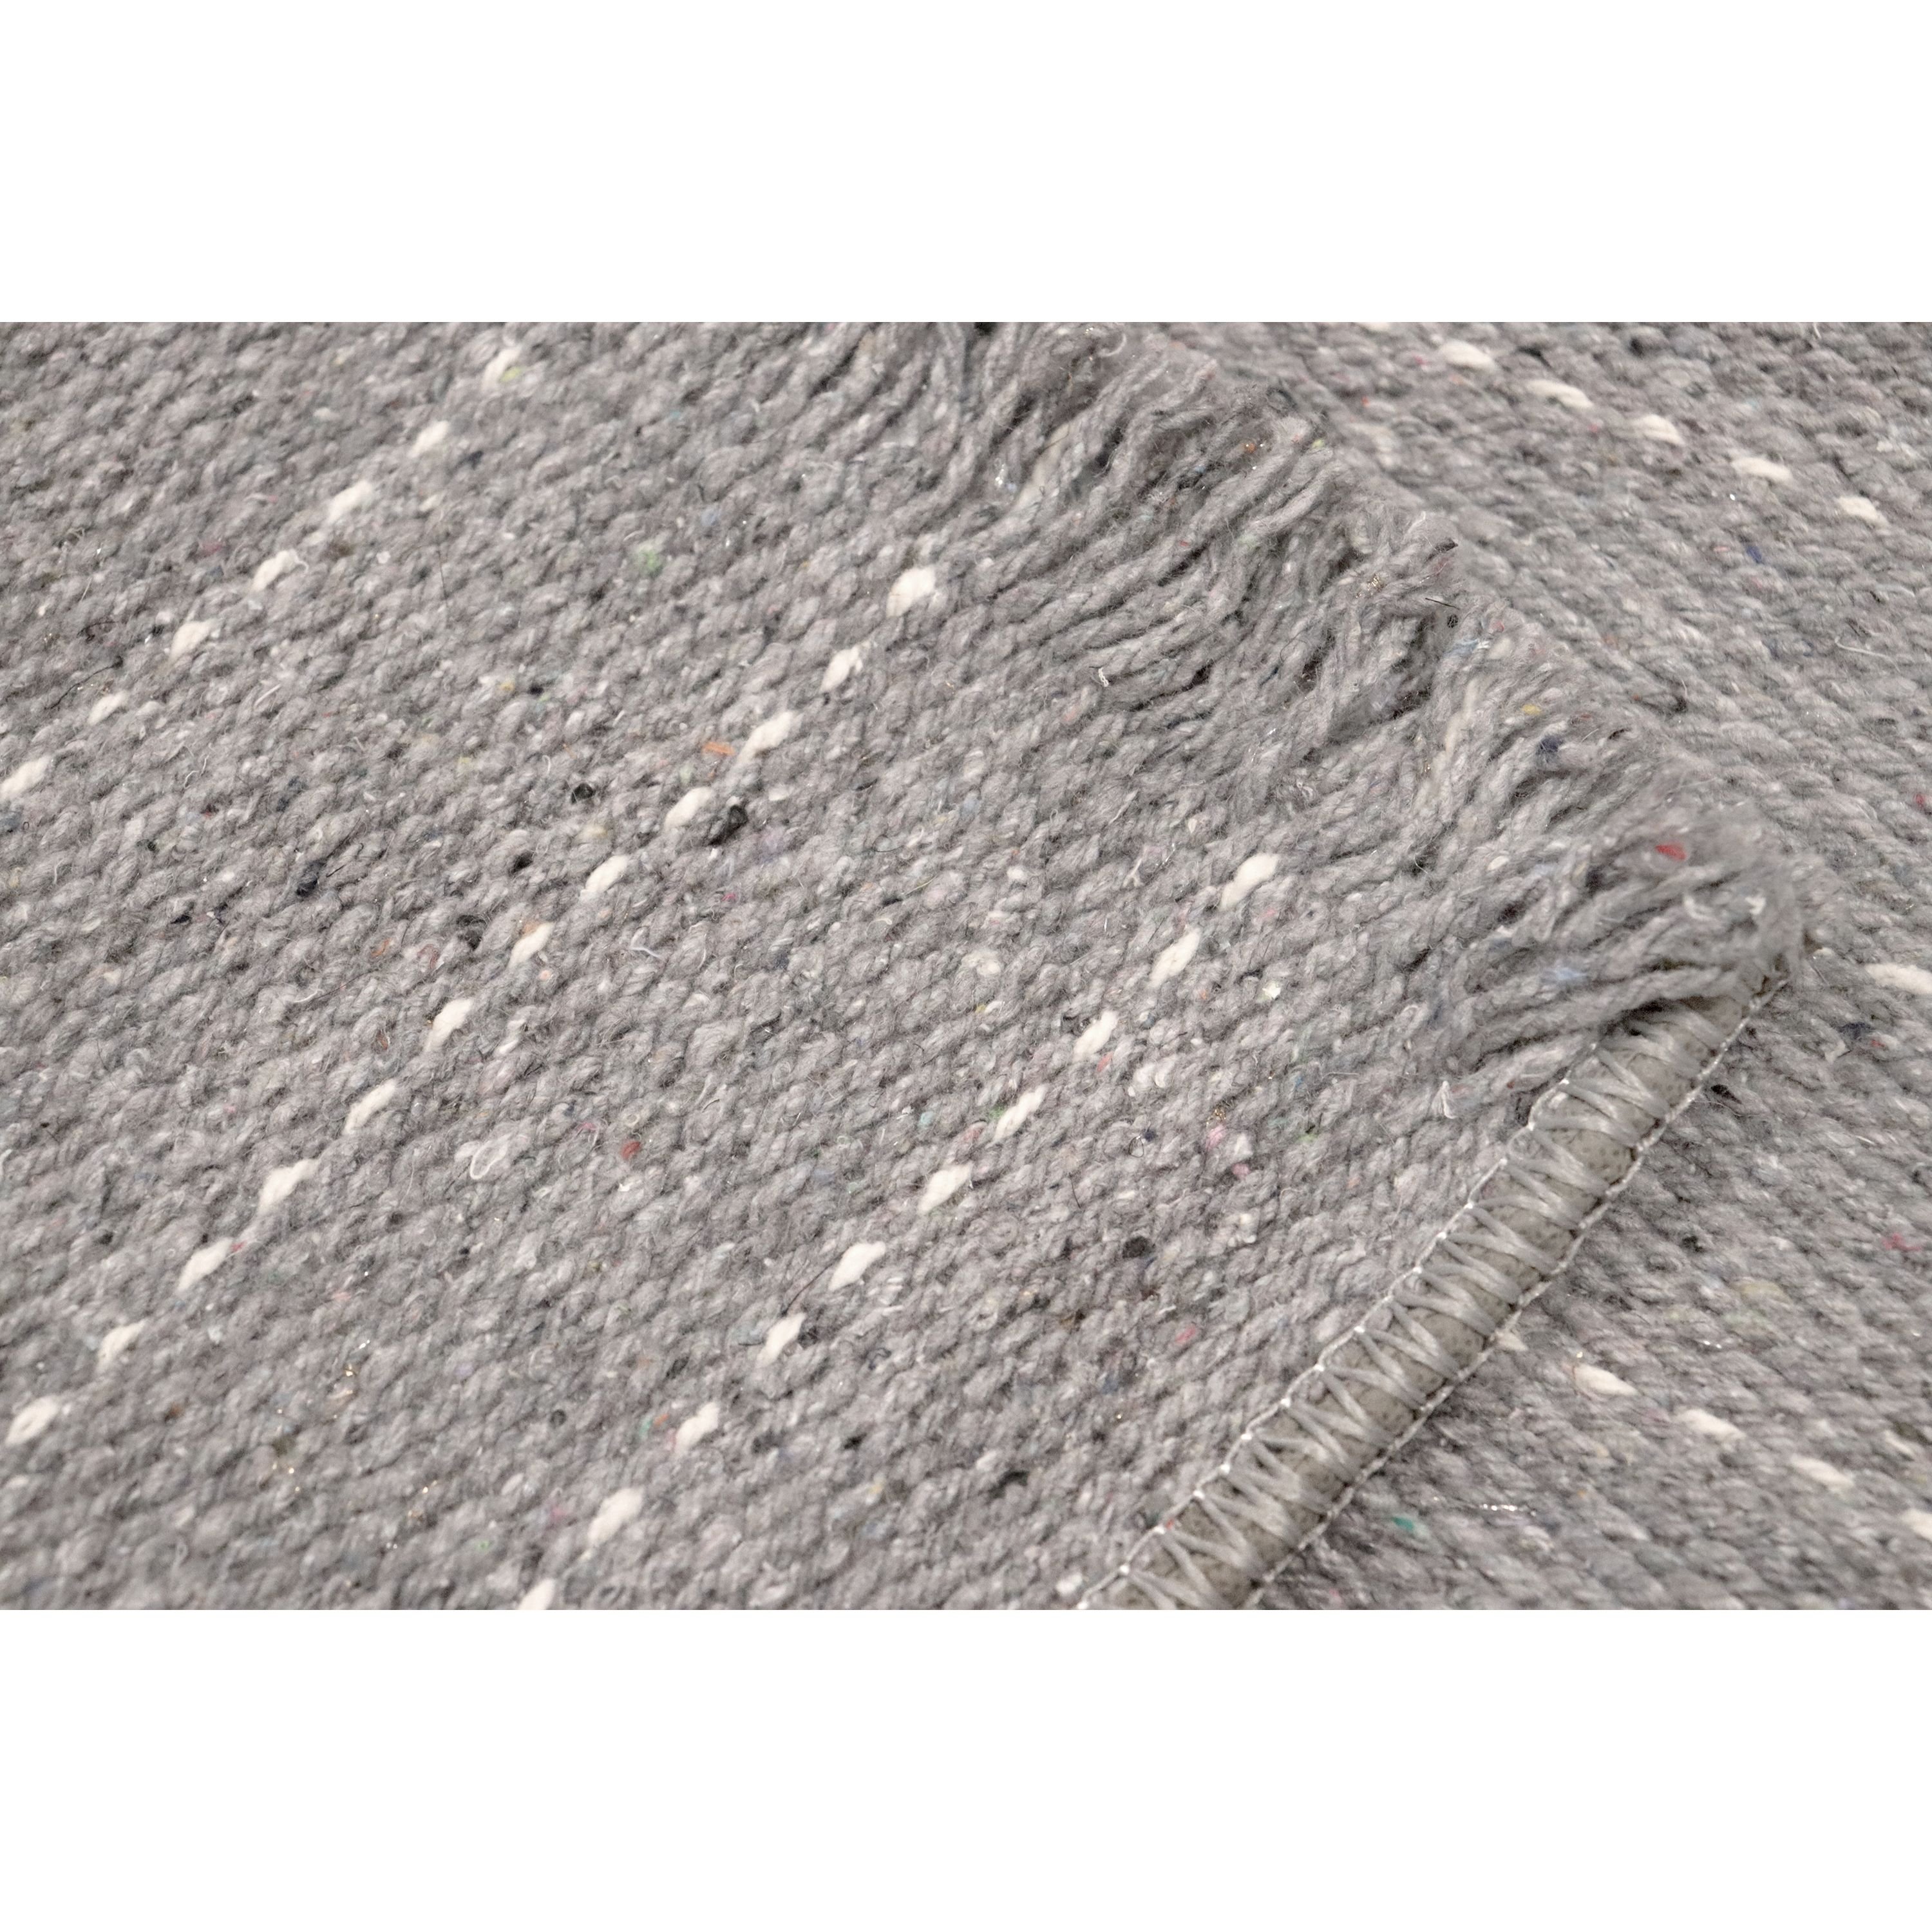 Ковер универсальный Izzihome Naturel Rug stripe grey 120х180 см серый (201AKGR004197) - фото 4